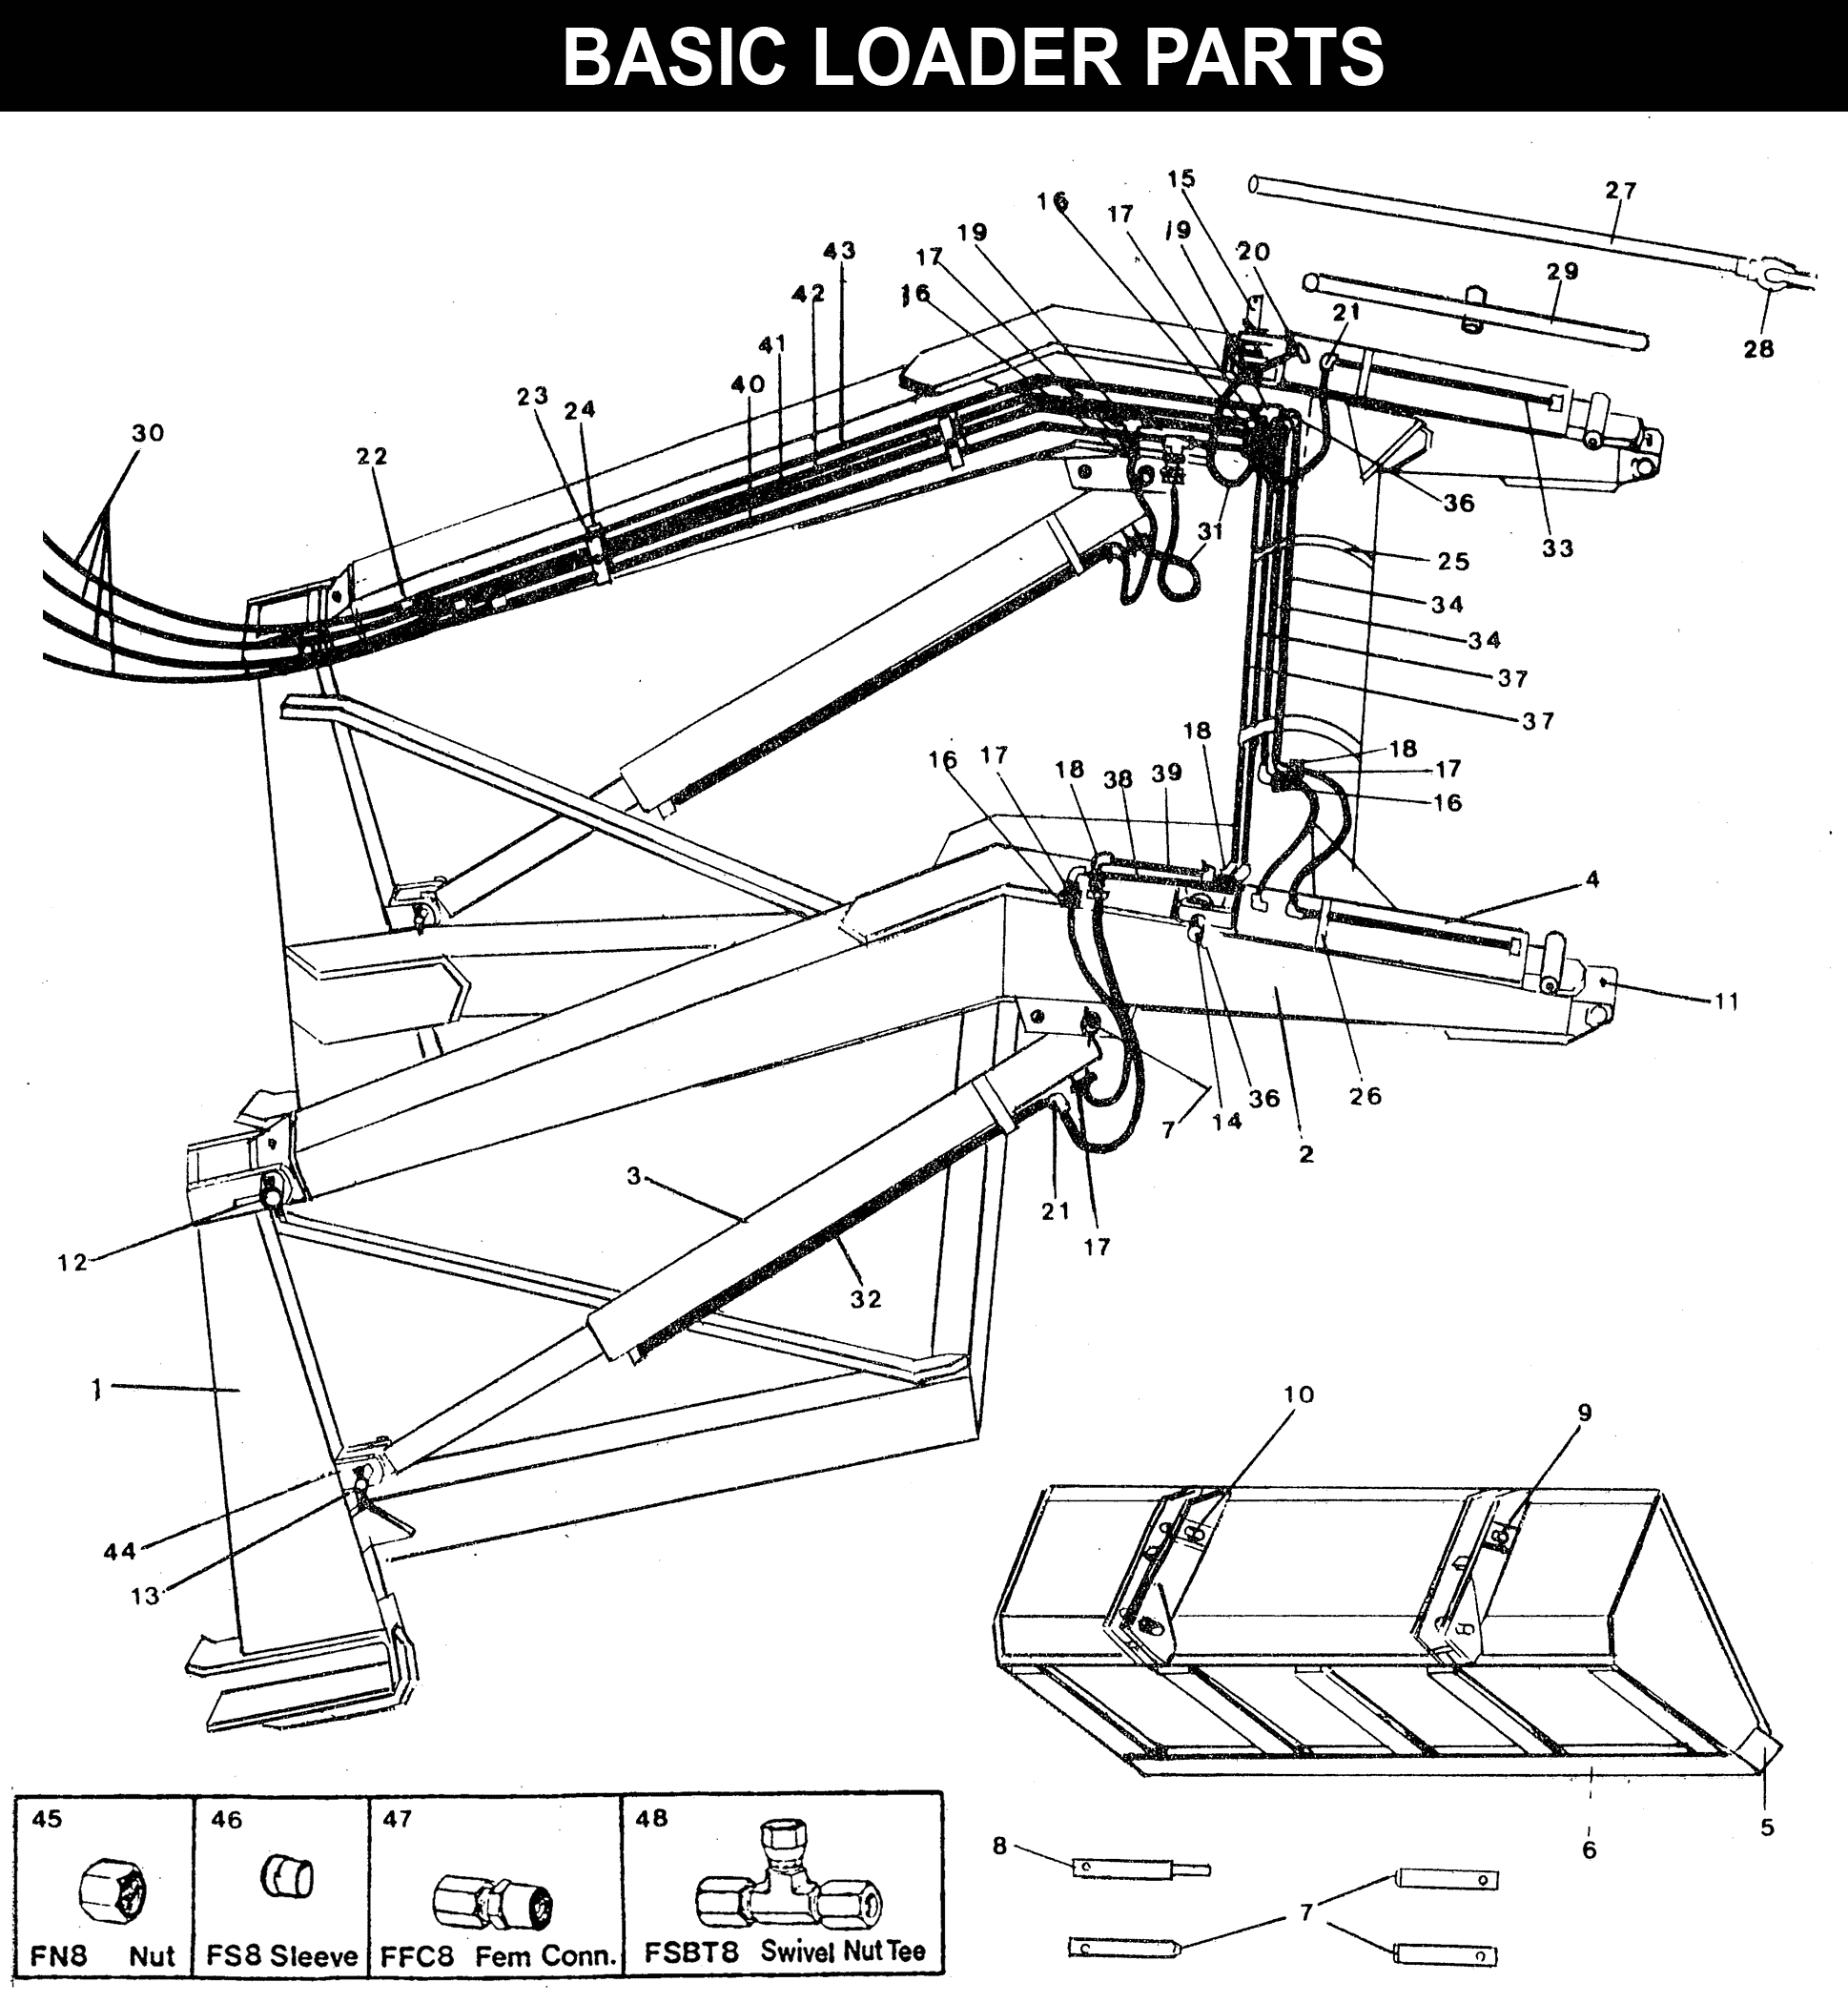 WL-50 Basic Loader Parts